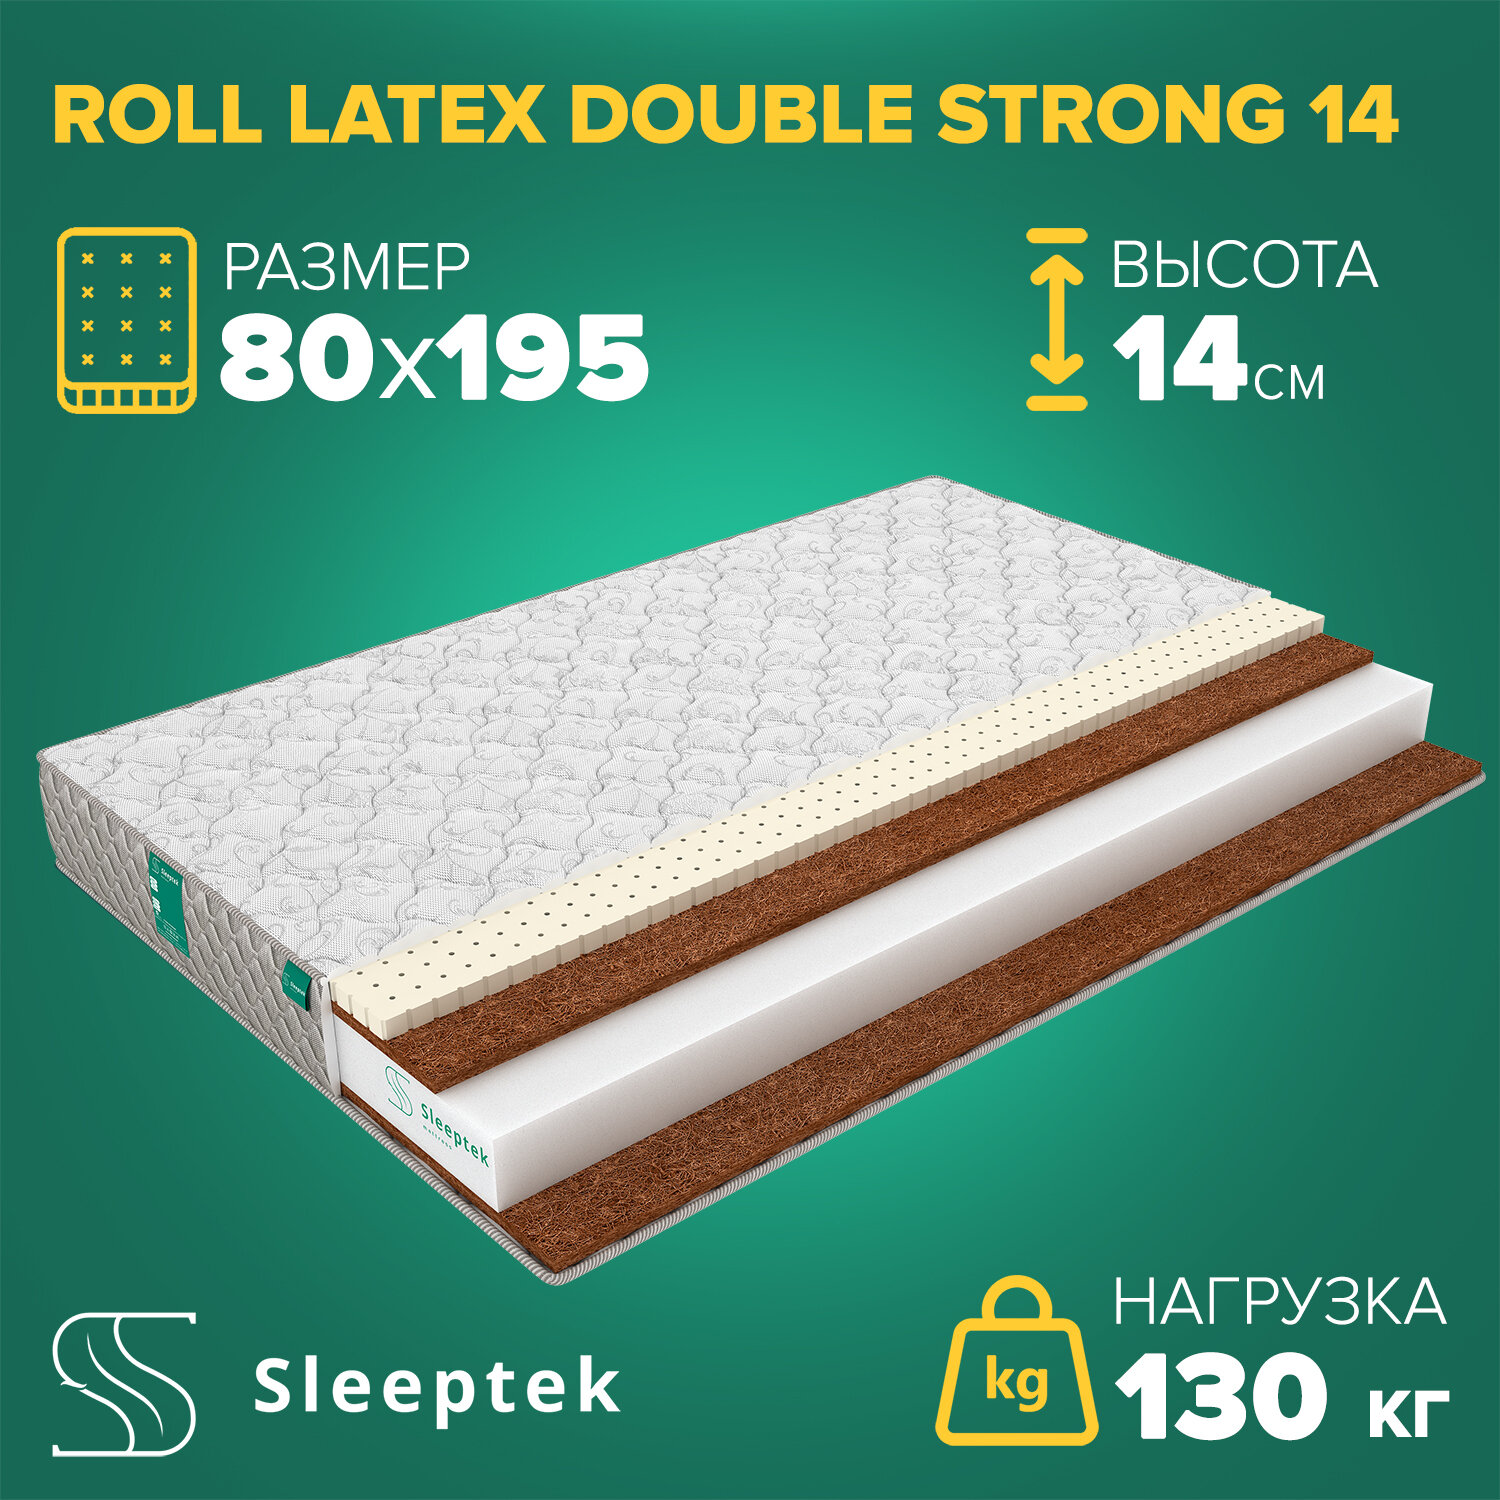 Матрас Sleeptek Roll Latex DoubleStrong 14 80х195